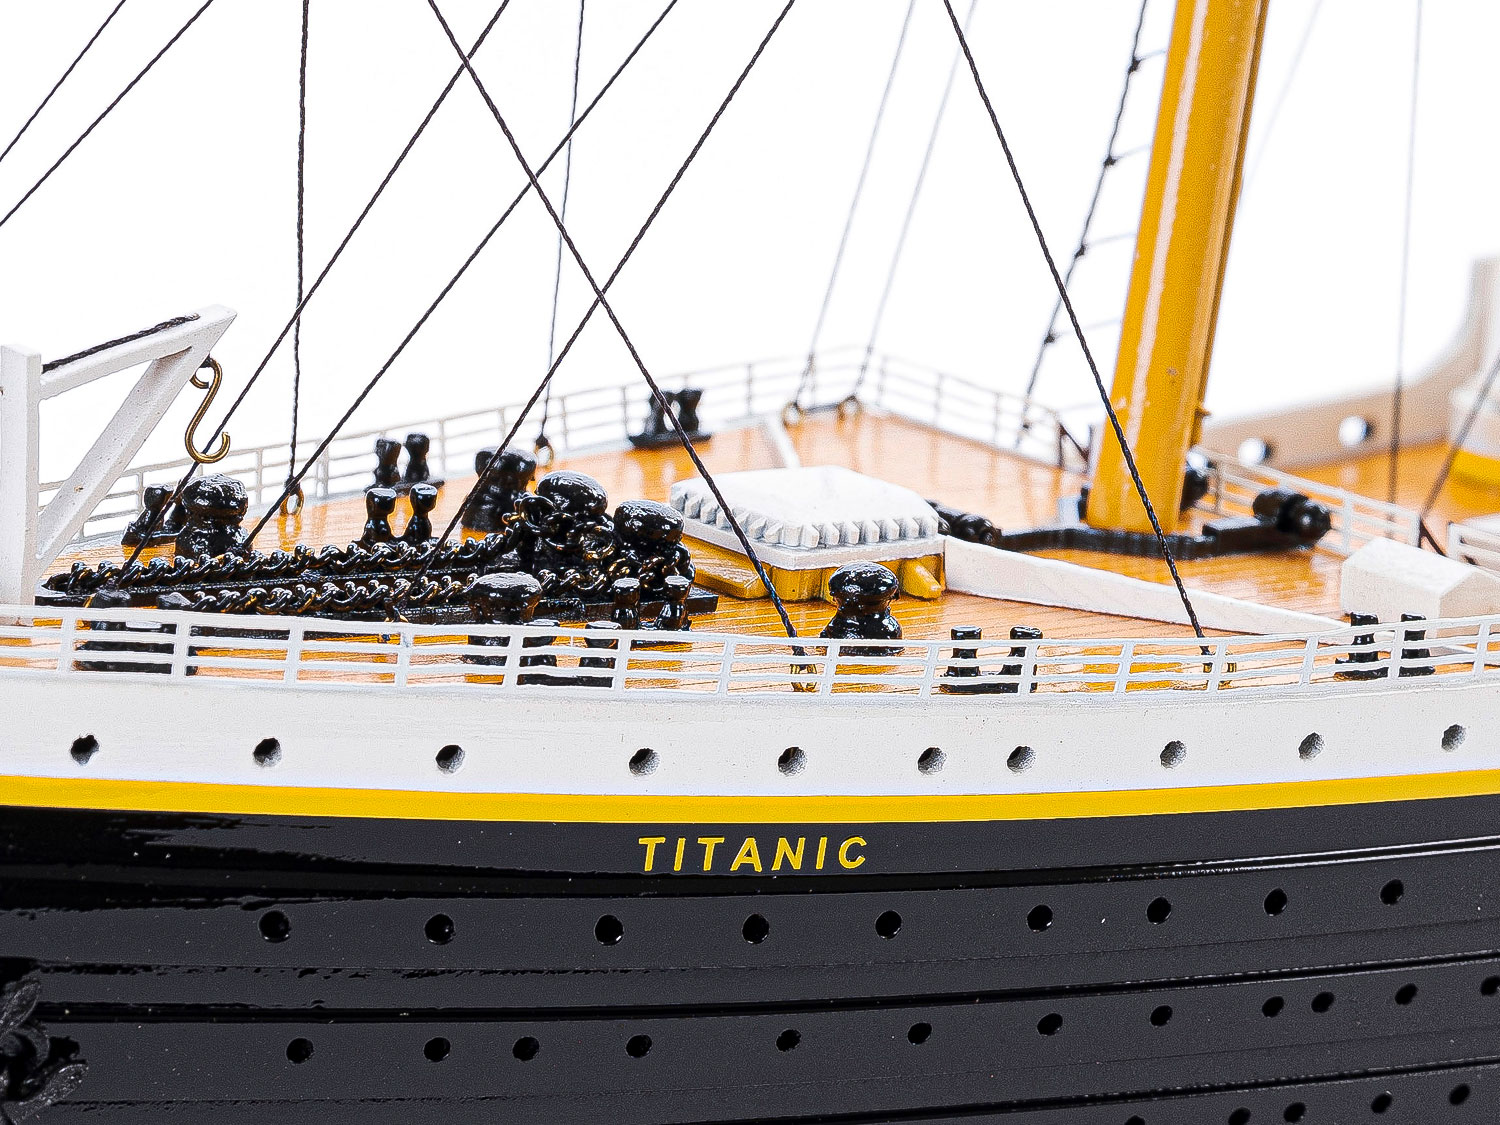 Maquette géante du bateau paquebot Titanic